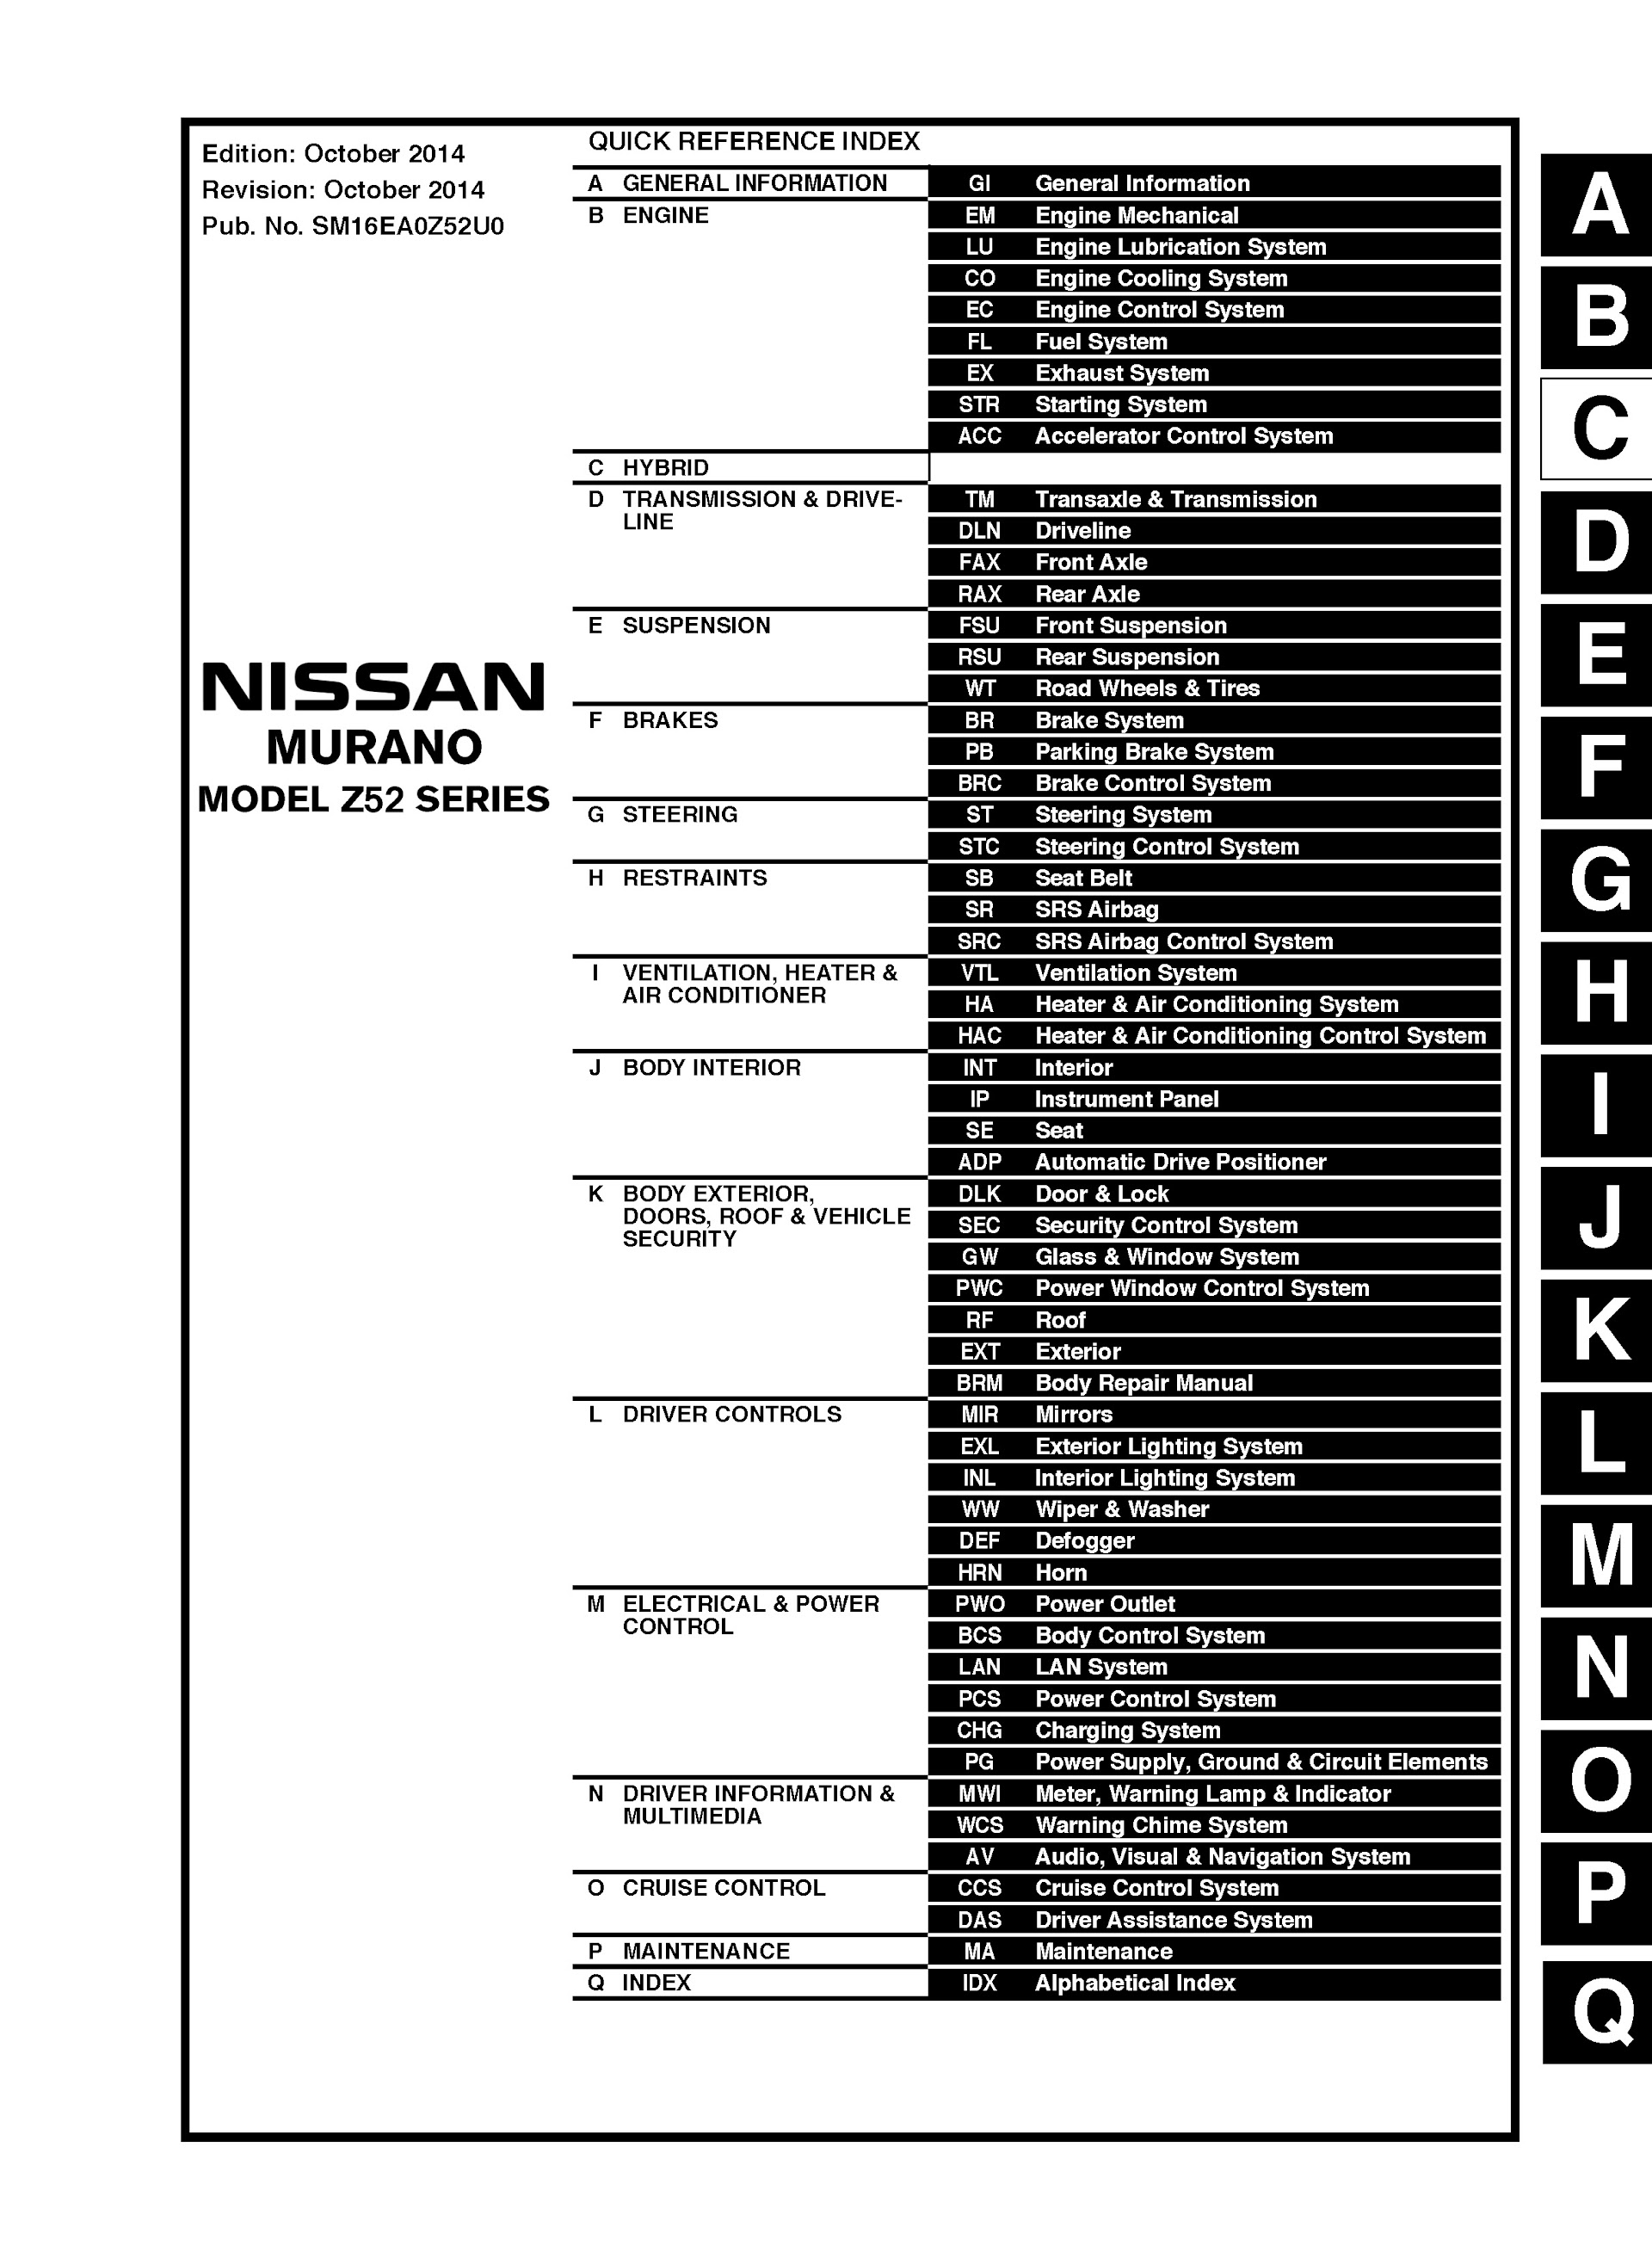 Table of Contents 2015 Nissan Murano Repair Manual